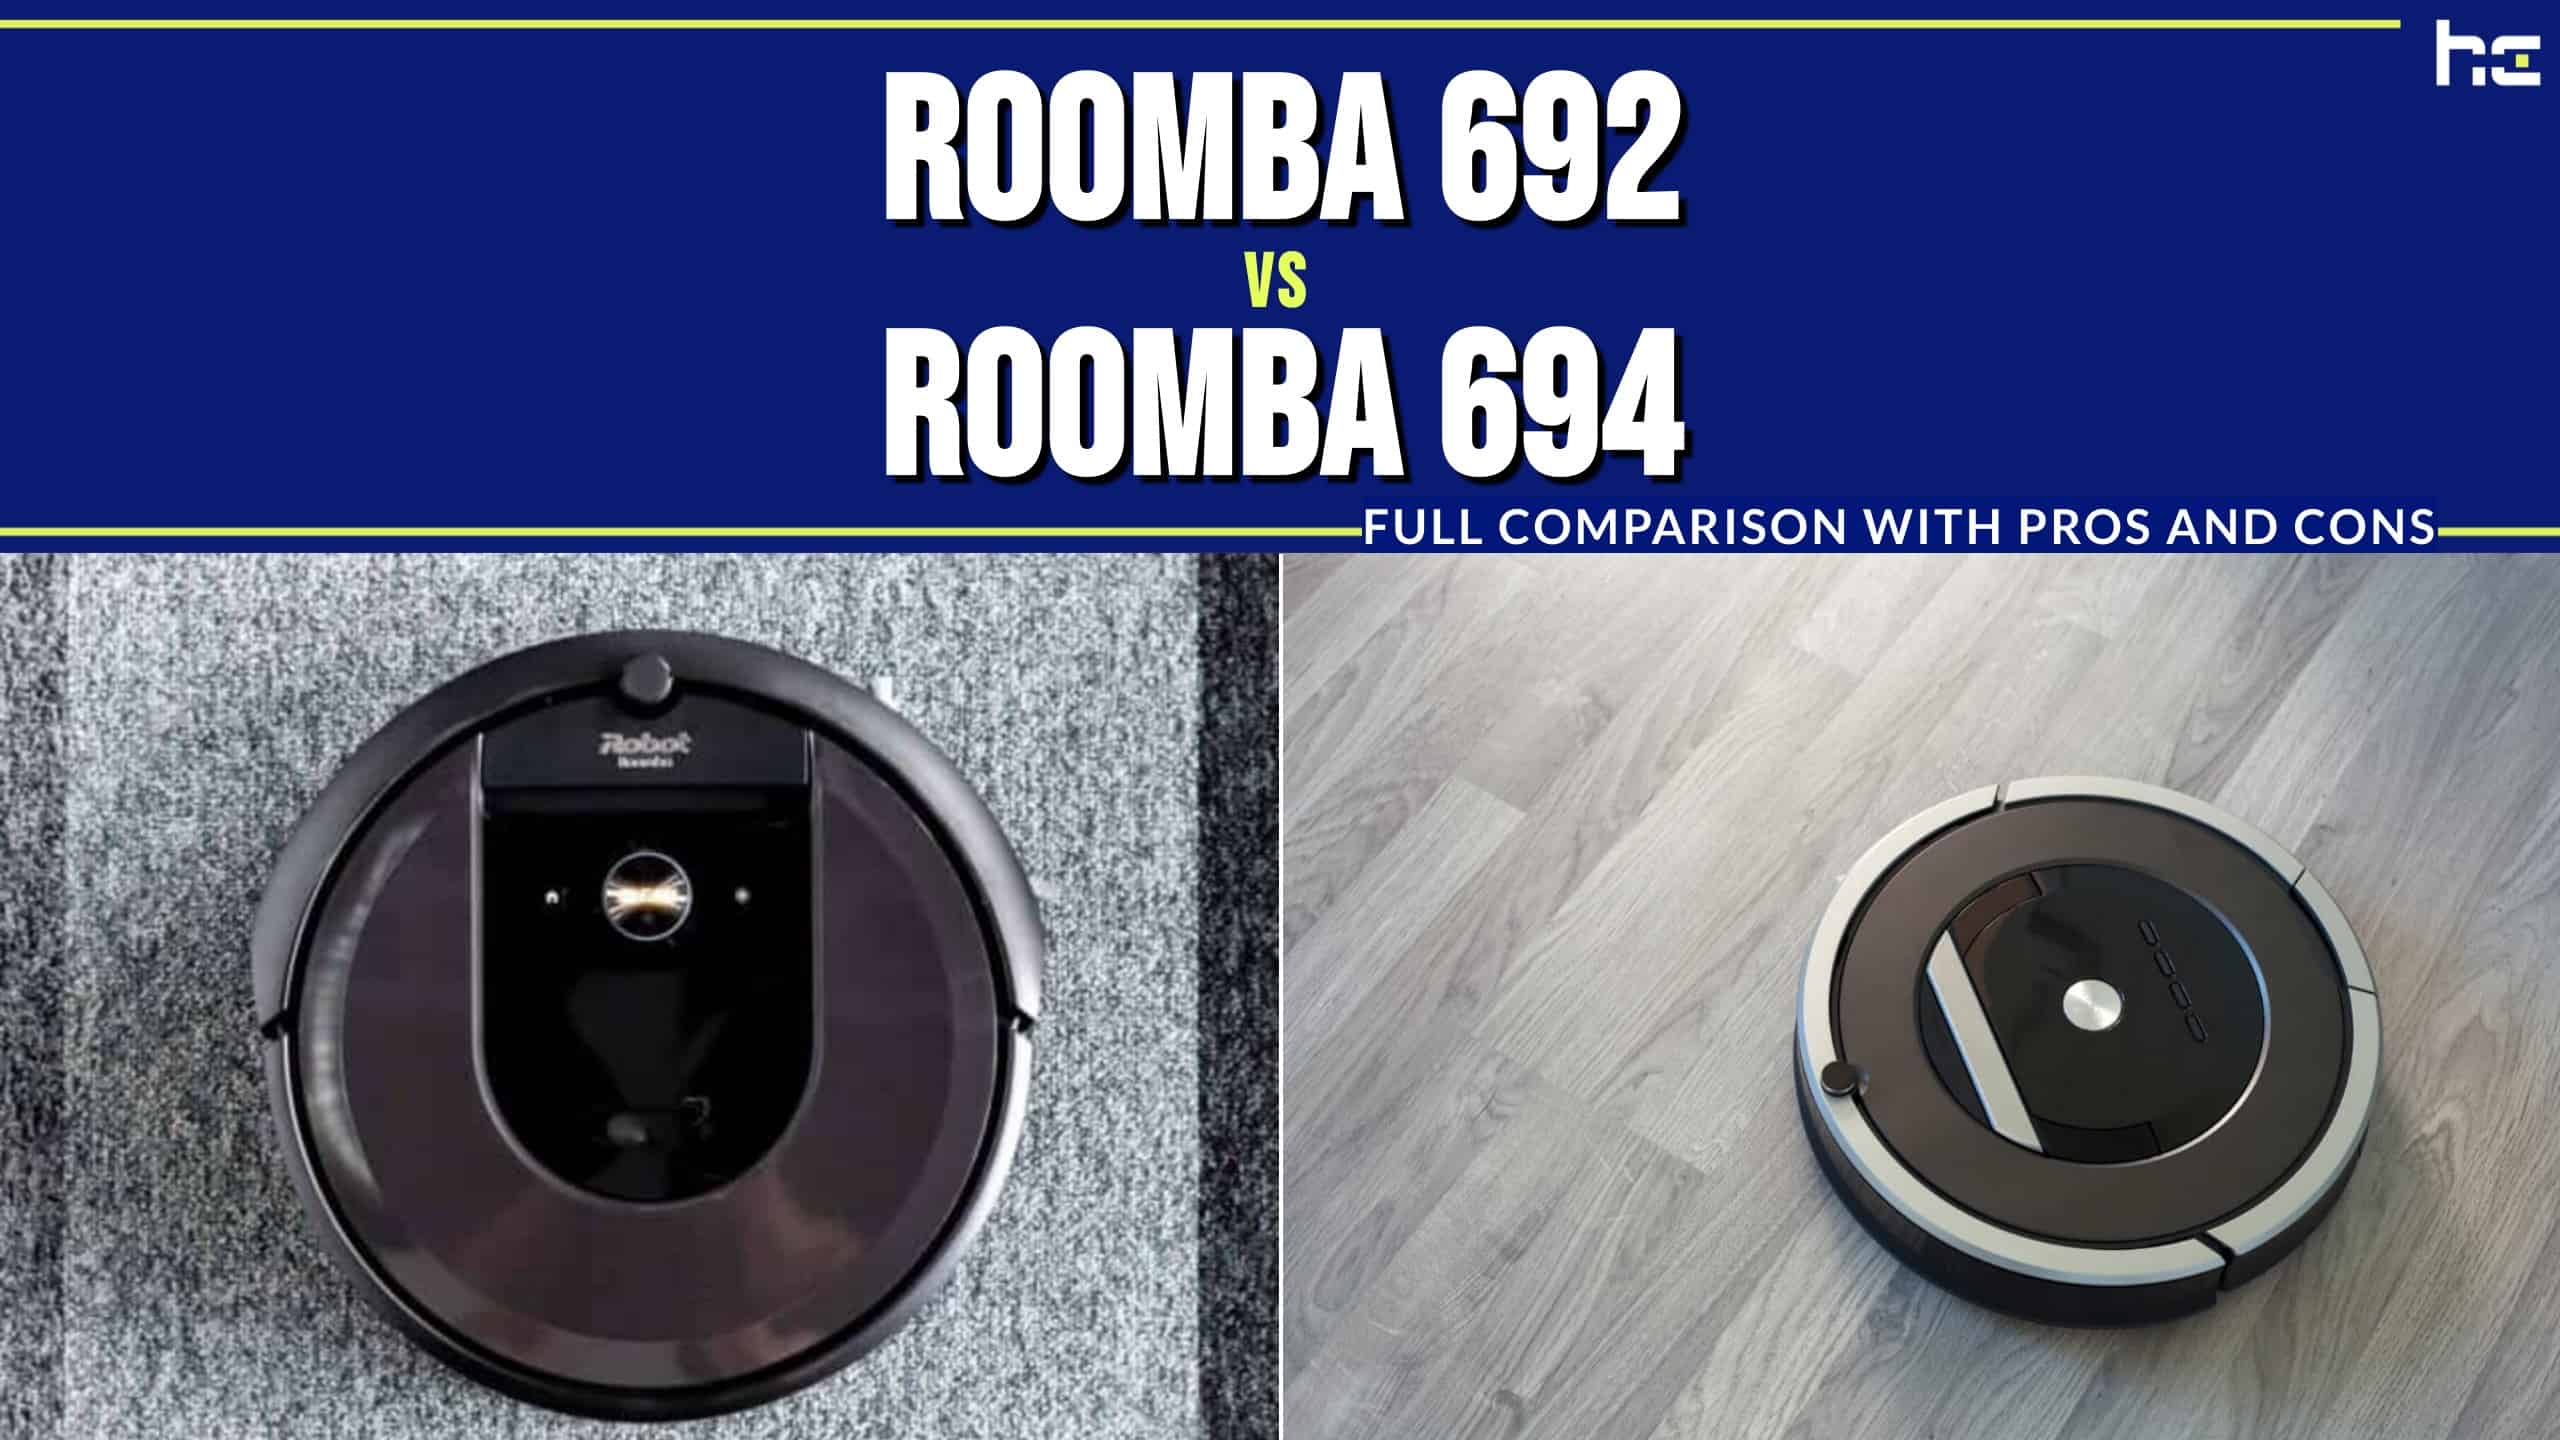 Roomba 692 vs Roomba 694